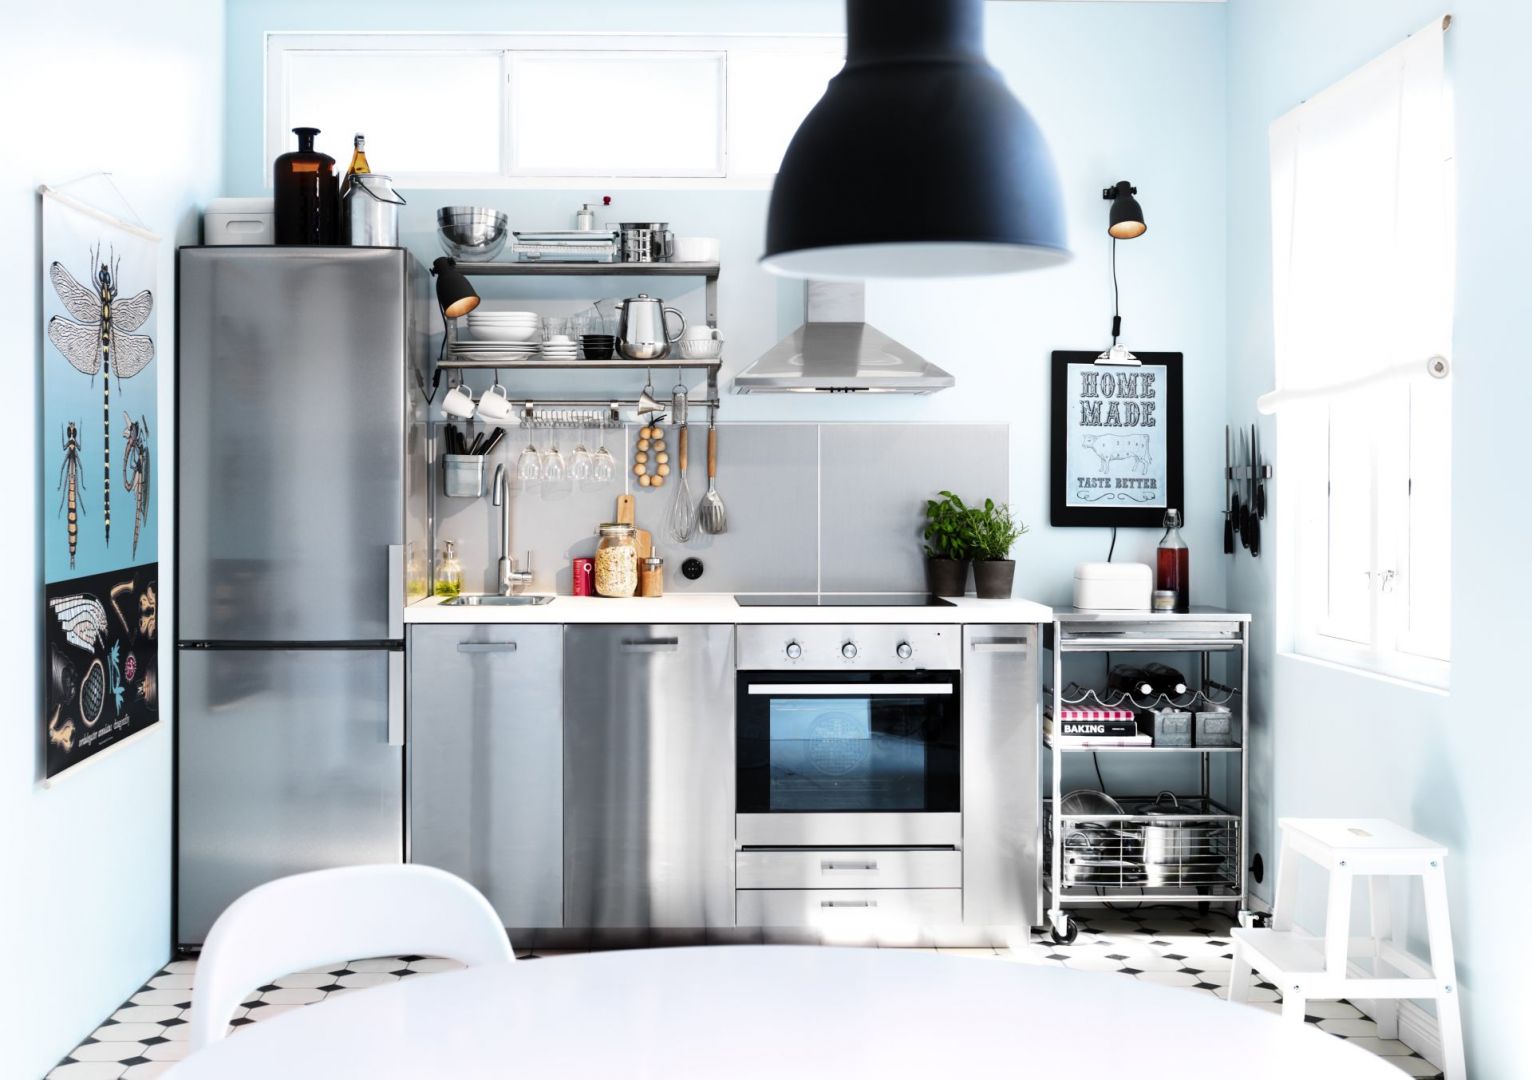 Zabudowa kuchenna w kolorze srebrzystej stali to nie tylko modna, ale i praktyczna stylizacja. Gładka powierzchnia jest łatwa do utrzymania w czystości i odbija światło, które dodaje pomieszczeniu przestrzeni. Fot. IKEA